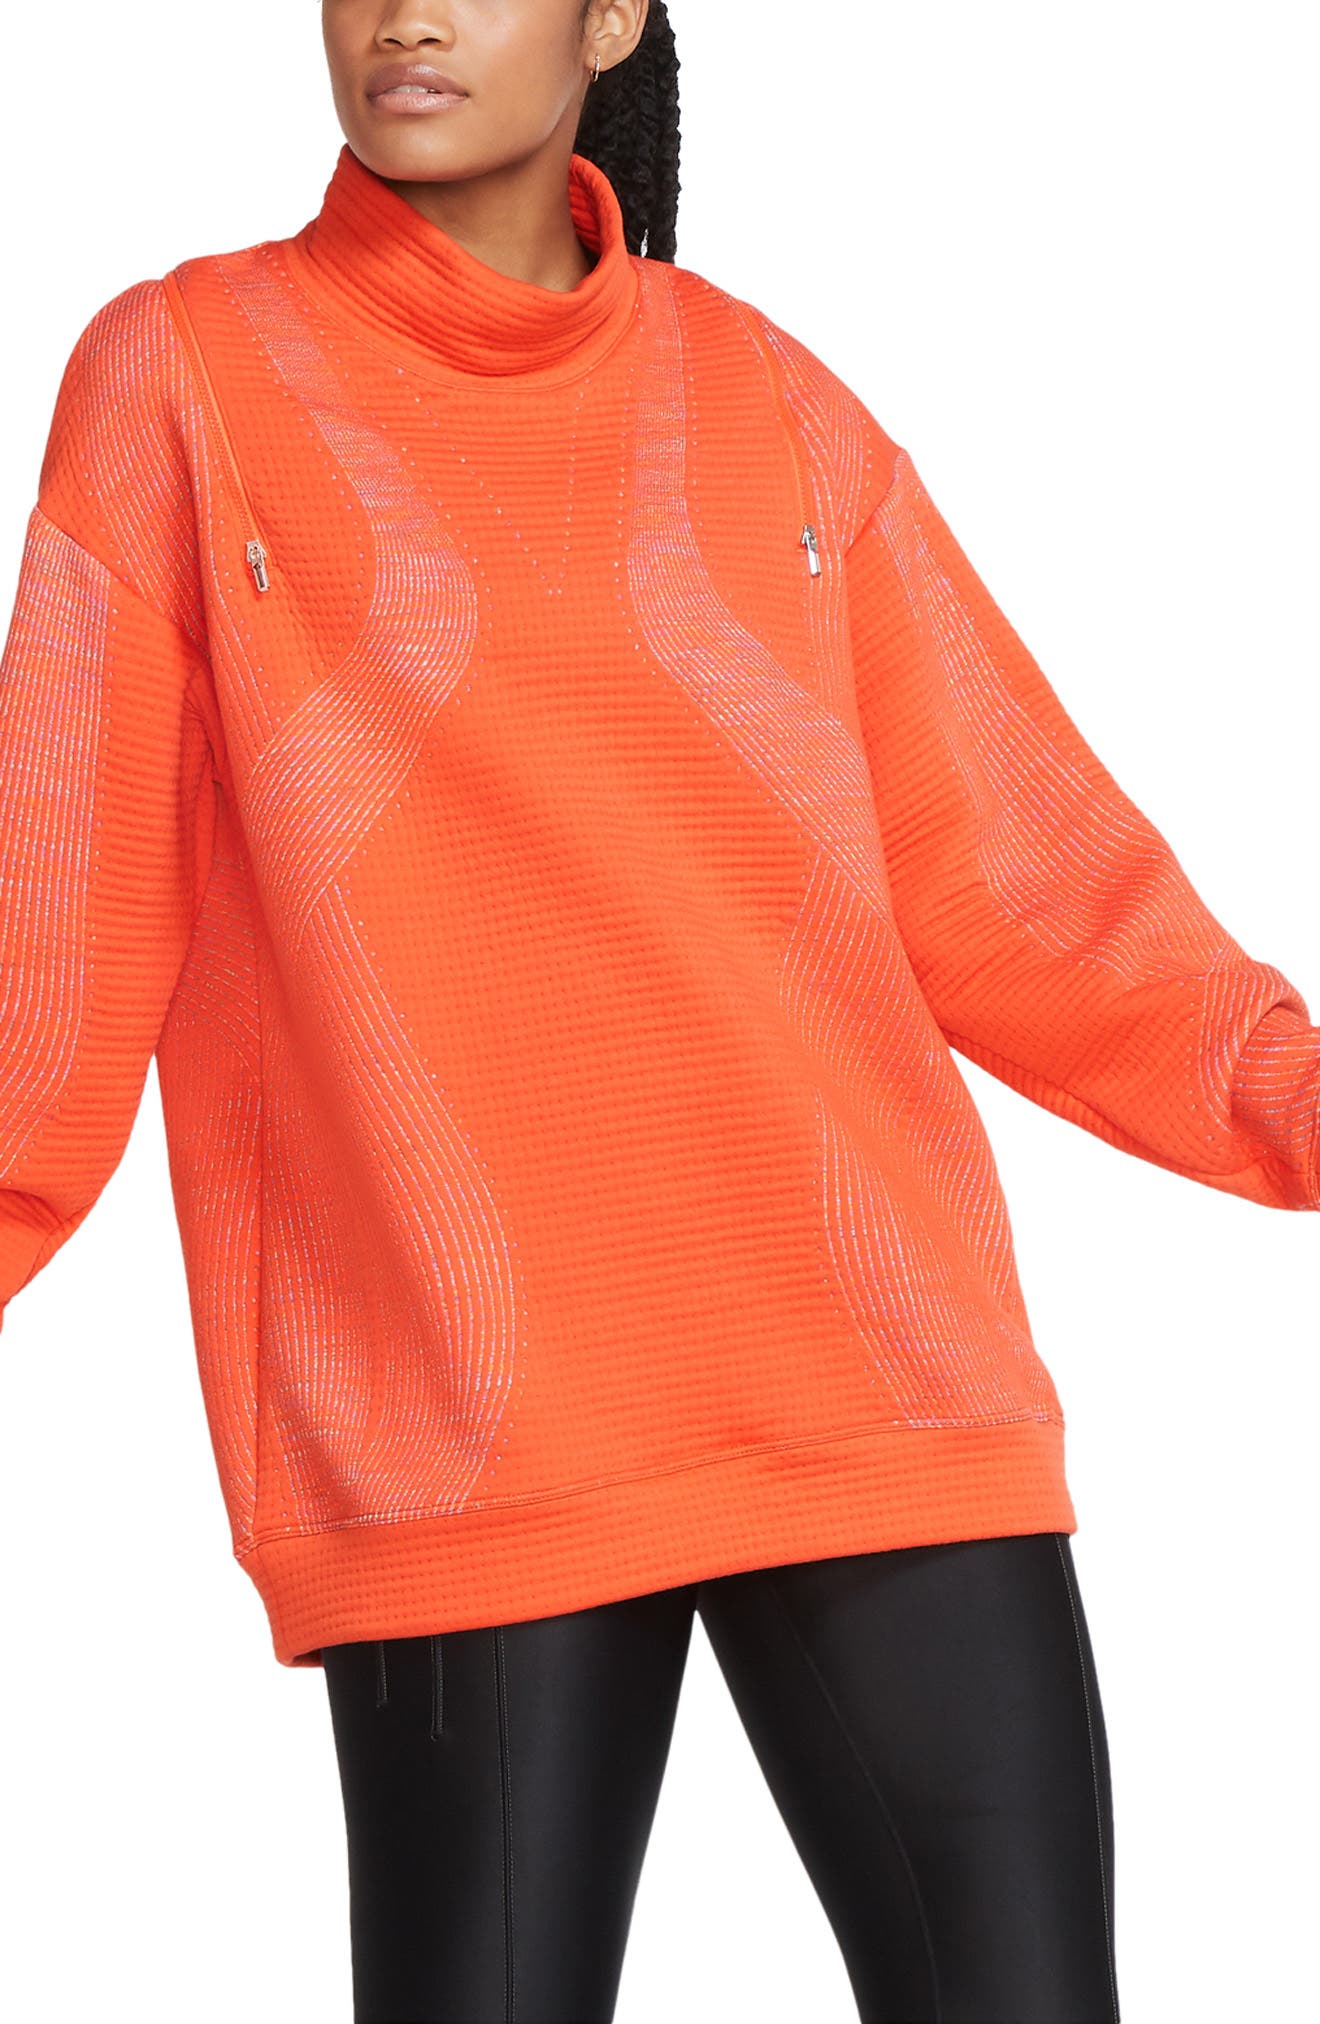 nike orange women's clothing